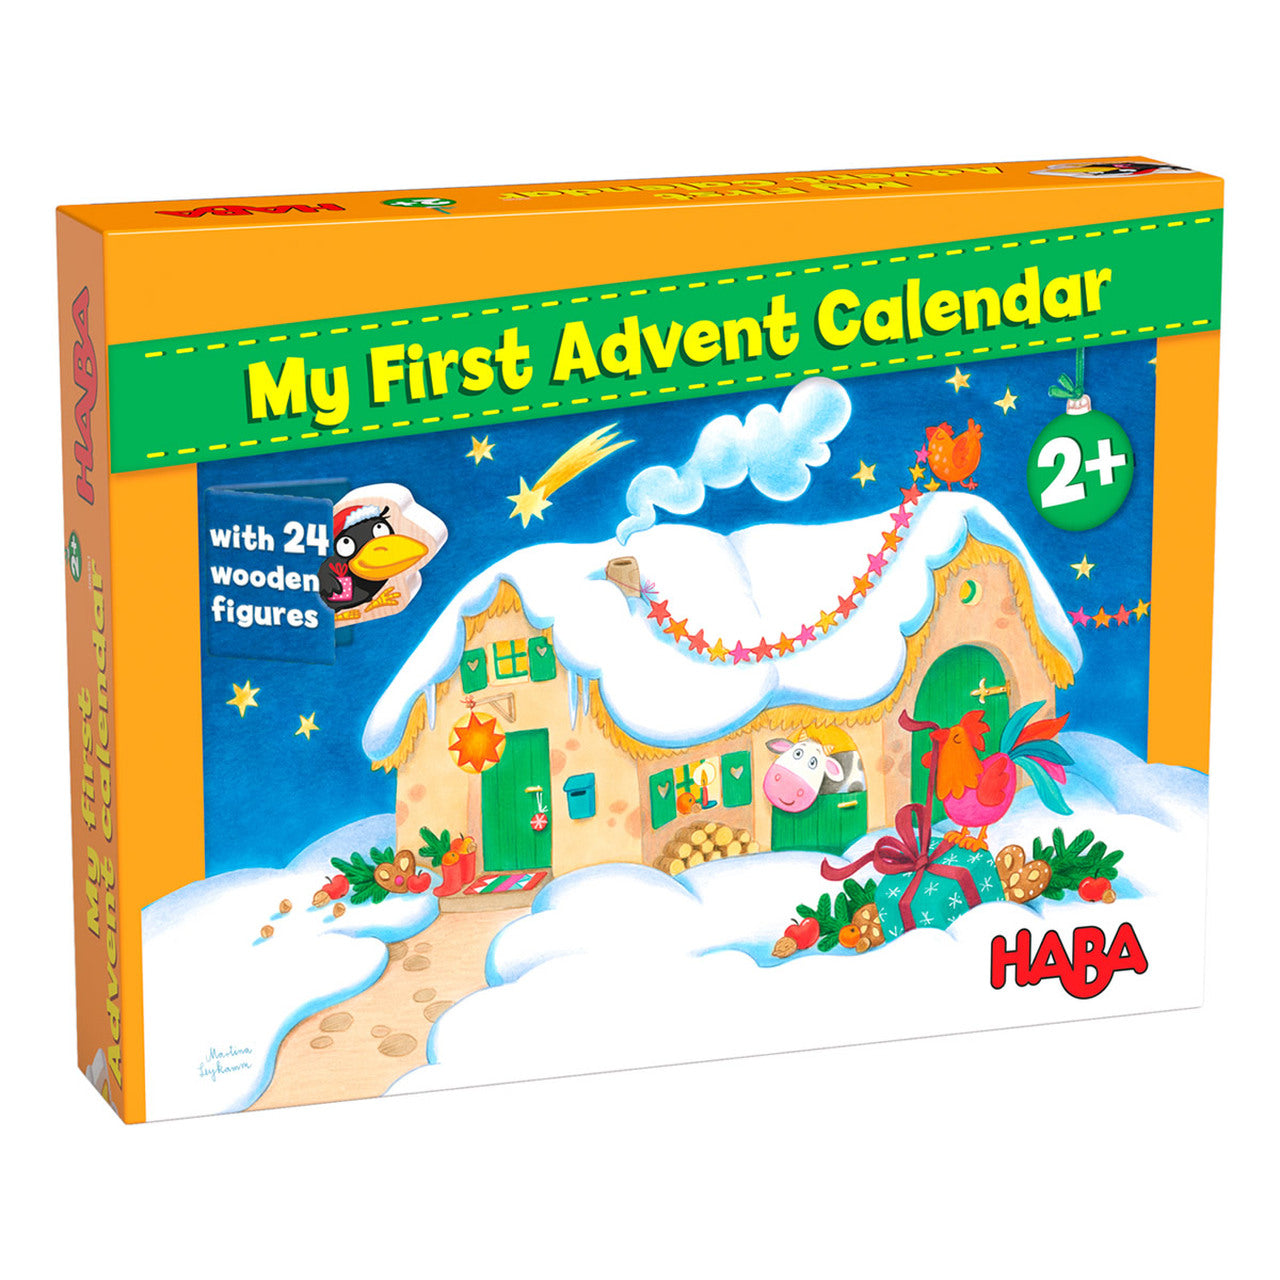 My First Advent Calendar – Farmyard Animals